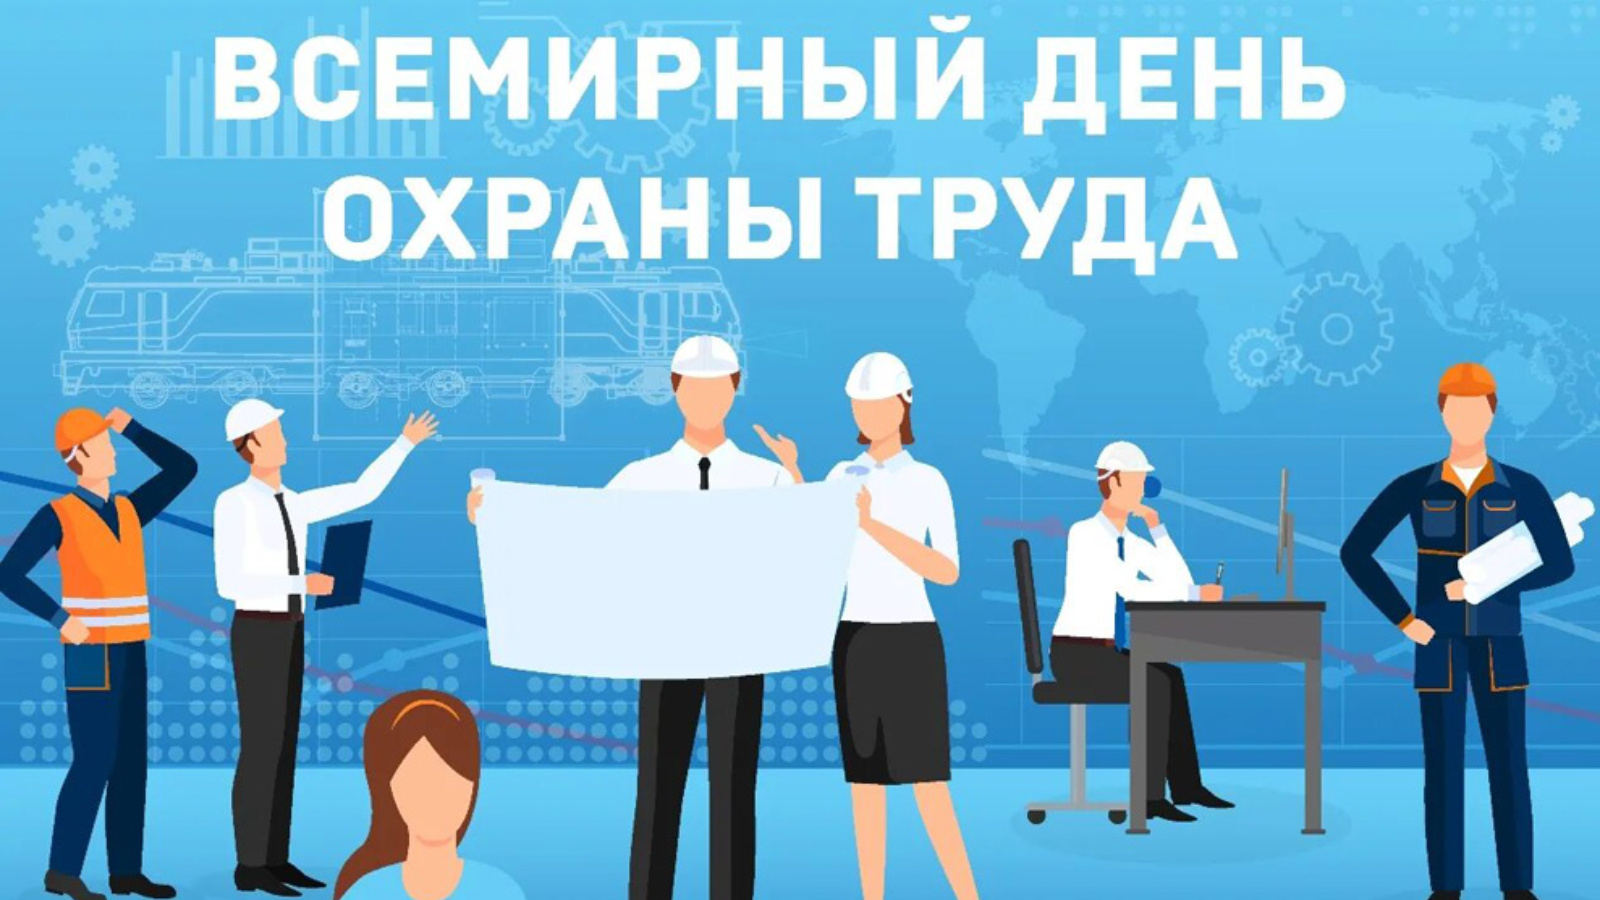 С 10 апреля в Белгородской области проходит Декада охраны труда.